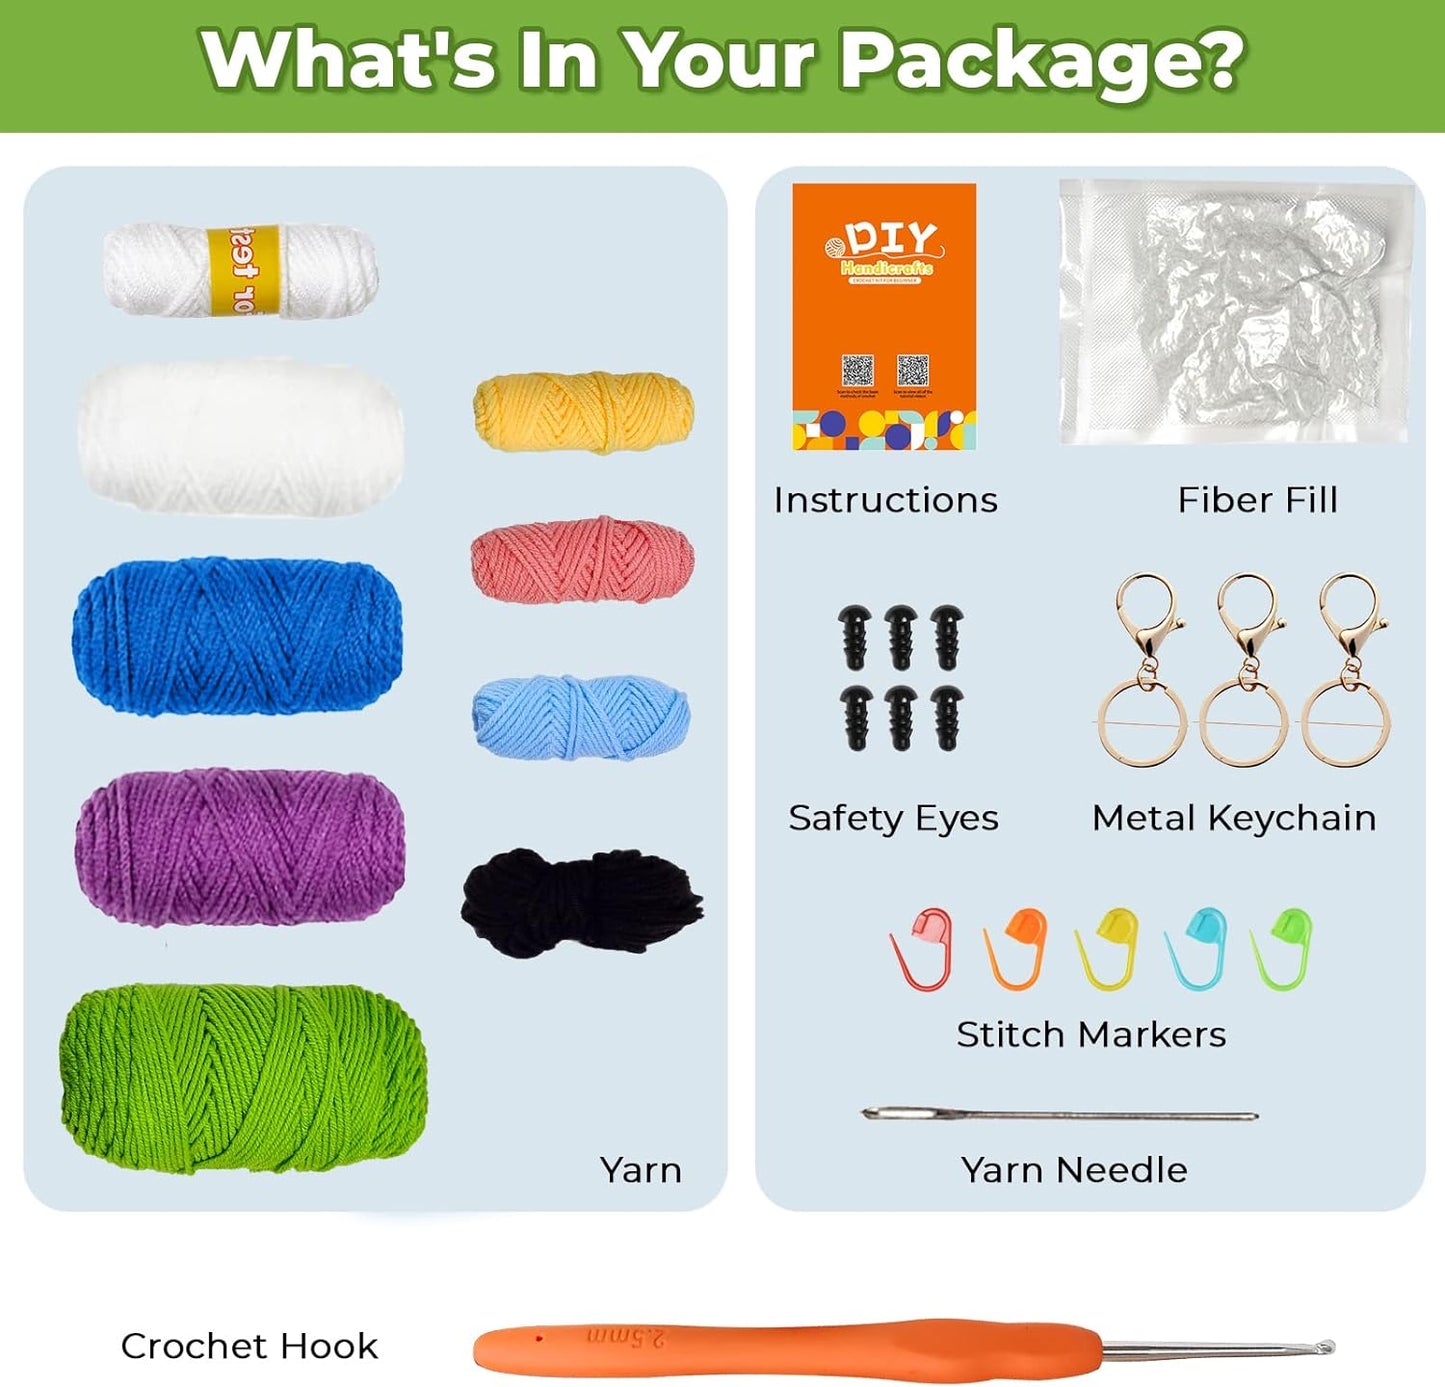 NOSTOSON Crochet Kit for Beginners, 3 Pattern Animals-Owl, Penguin, Frog